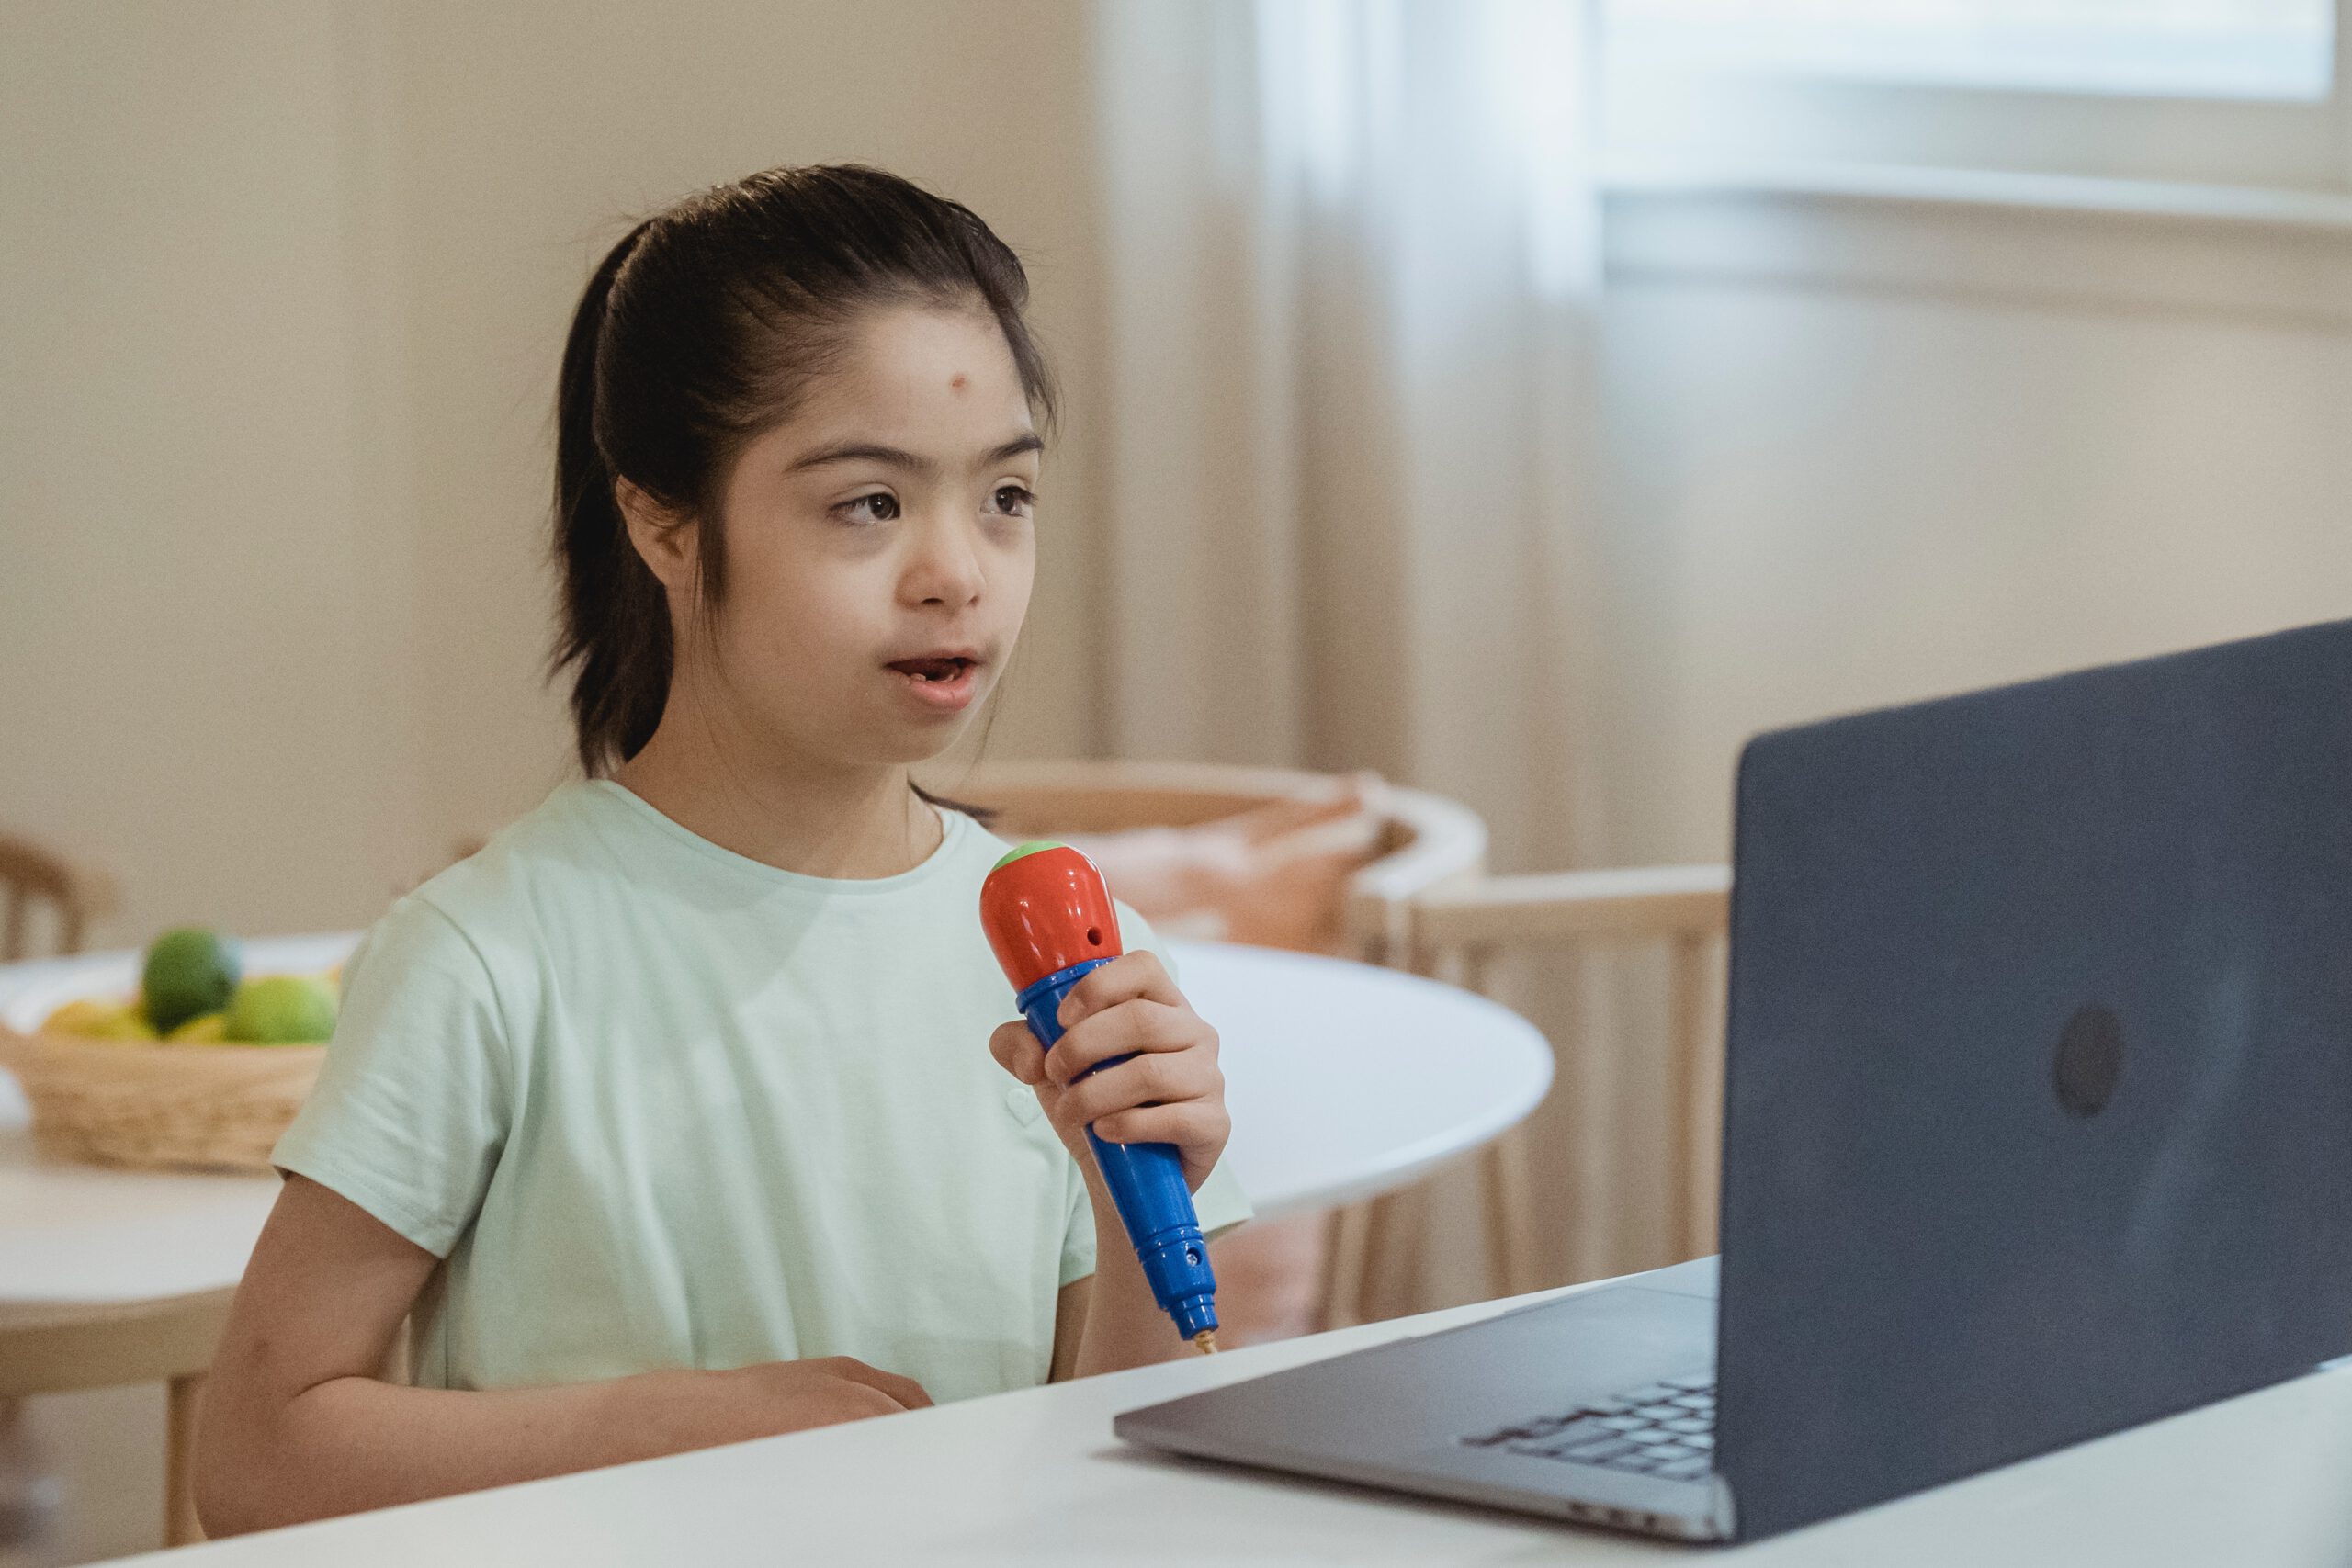 Dziewczynka z upośledzeniem umysłowym siedząca przed laptopem i trzymająca w ręce plastikowy zabawkowy mikrofon